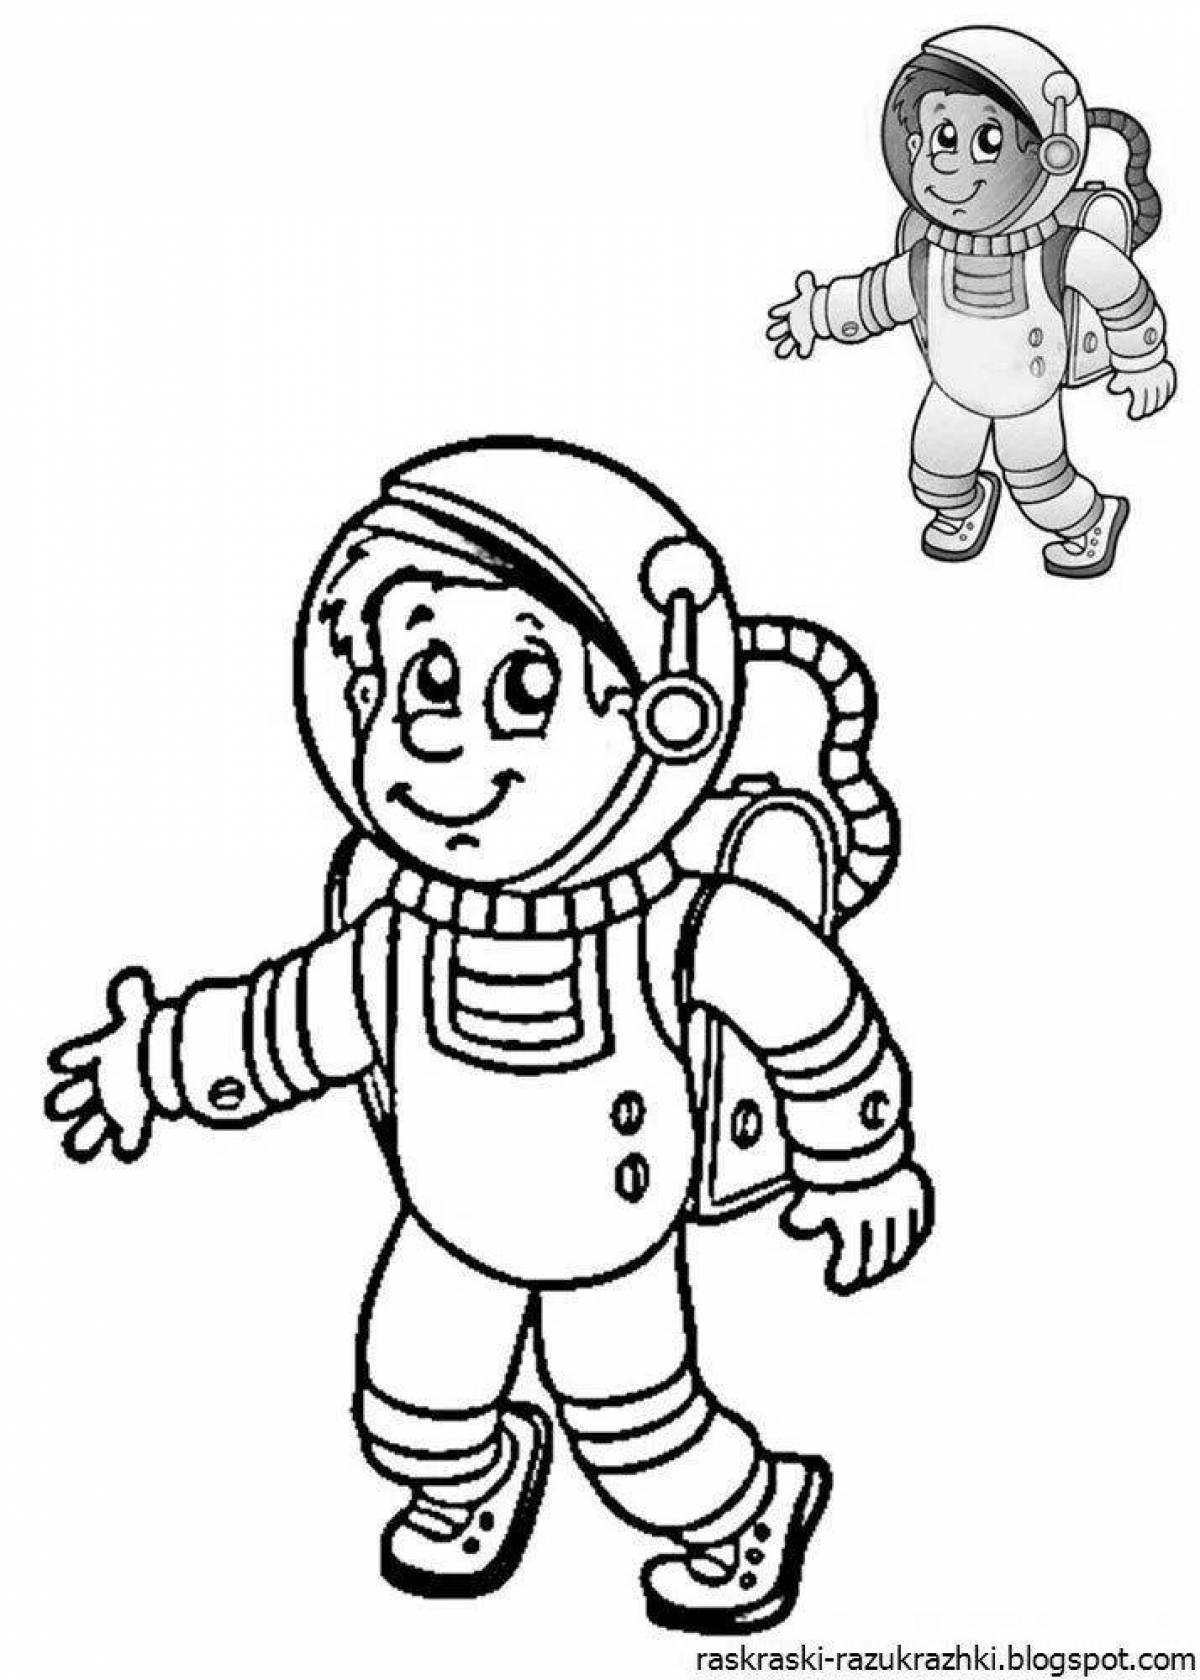 Скафандр рисунок для детей. Космонавт раскраска. Космонавт раскраска для детей. Раскраска про космос и Космонавтов для детей. Раскраска космонавт в скафандре.